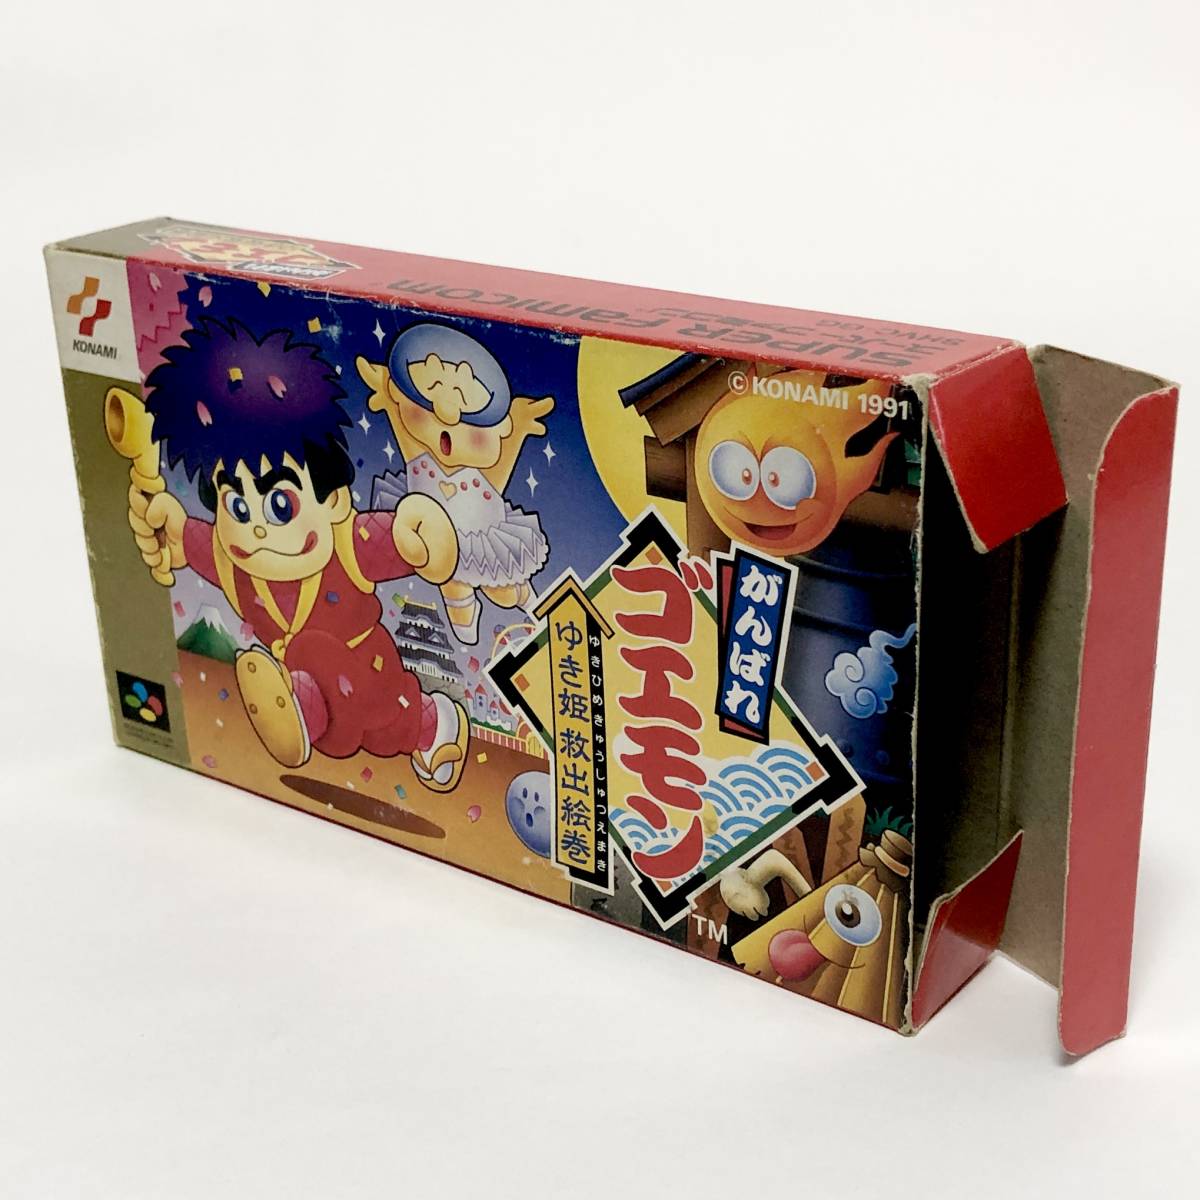 スーパーファミコン がんばれゴエモン ゆき姫救出絵巻 箱説付き 痛みあり コナミ Nintendo Super Famicom Ganbare Goemon CIB Konamiの画像2